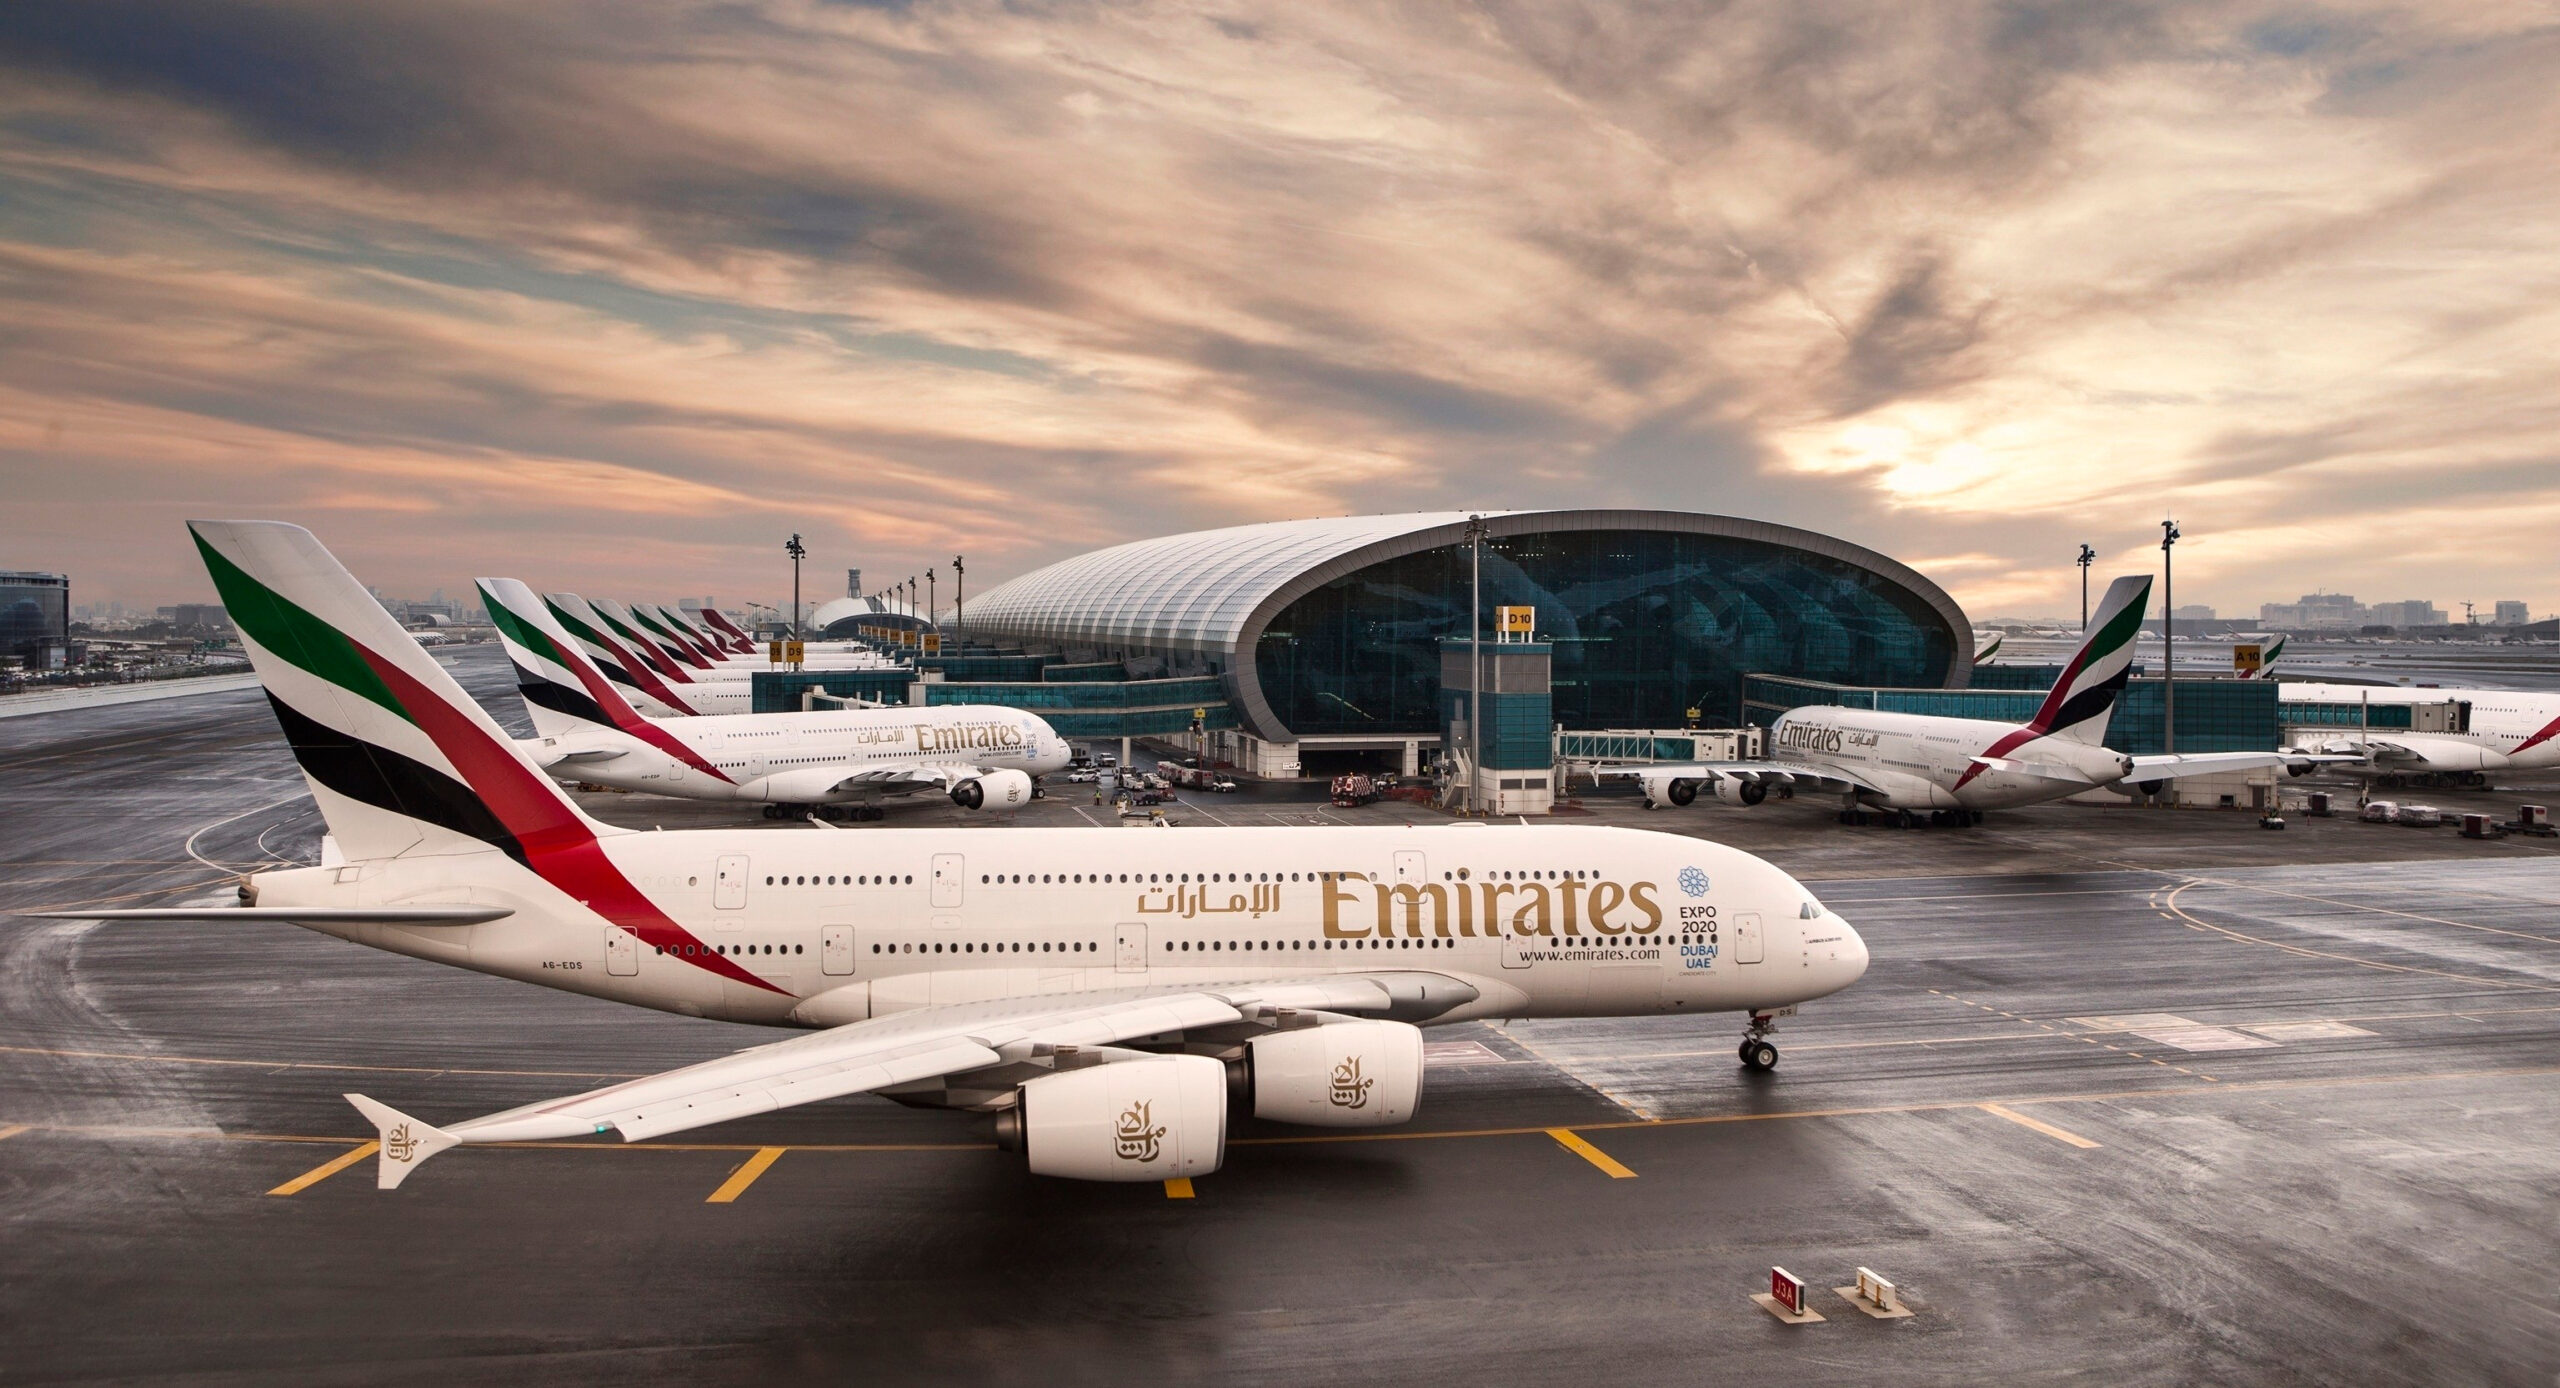 Dubai Airports - Emirates A380 aircraft at DXB airport